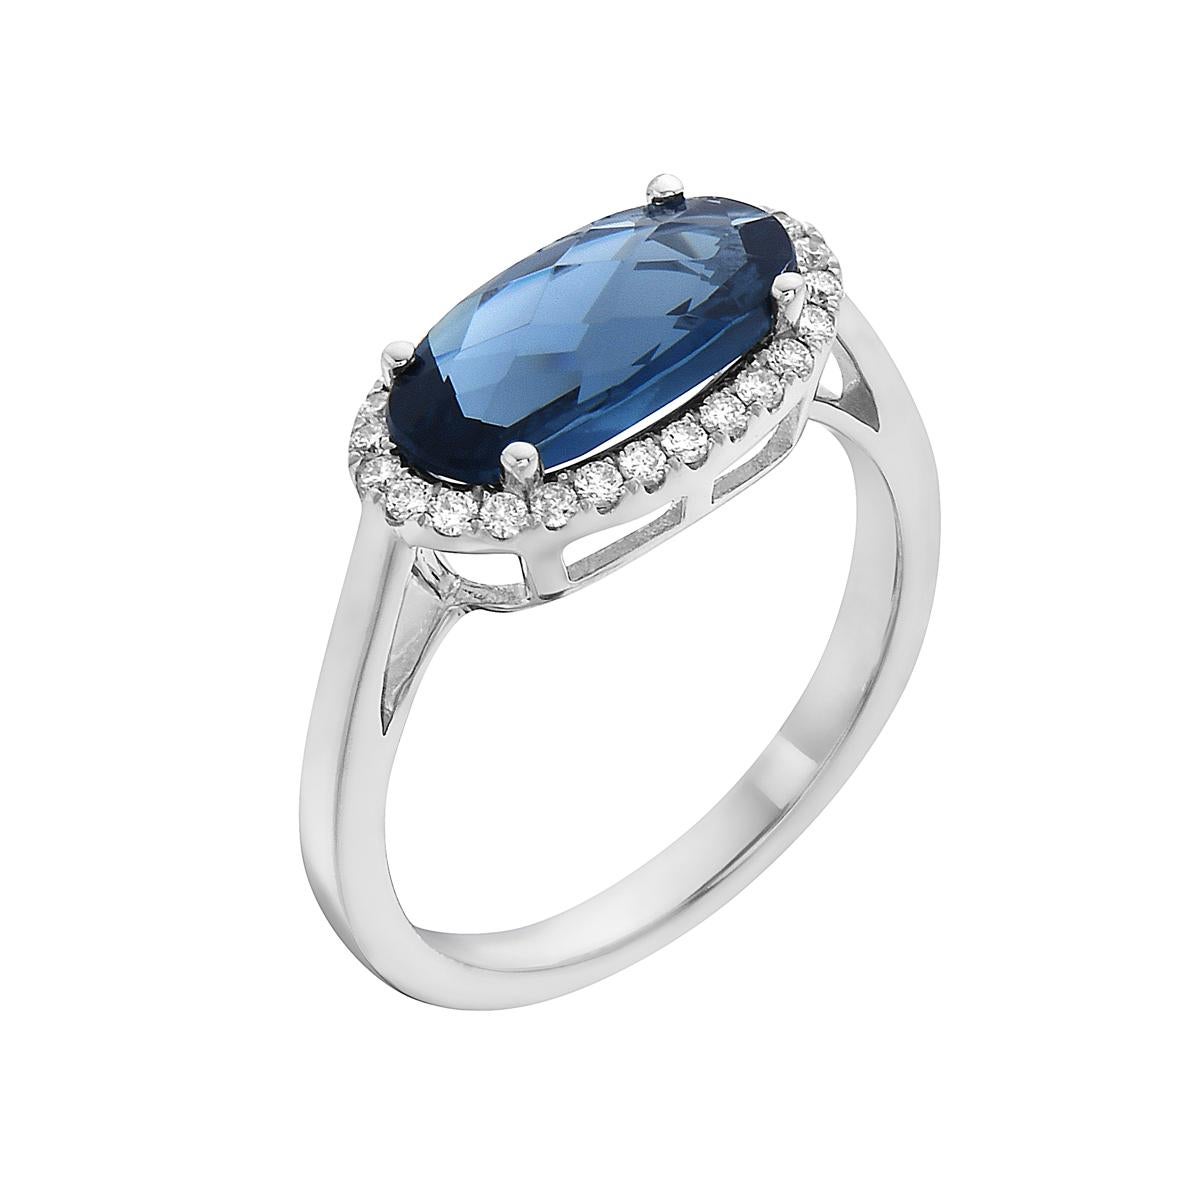 Mit diesem exquisiten Ring aus dem Halbedelstein Londoner Blautopas stehen Stil und Glamour im Rampenlicht. Dieser 14-karätige, oval geschliffene Ring besteht aus 2,8 Gramm Gold, 1 londoner Blautopas von insgesamt 2,12 Karat und ist von 26 runden